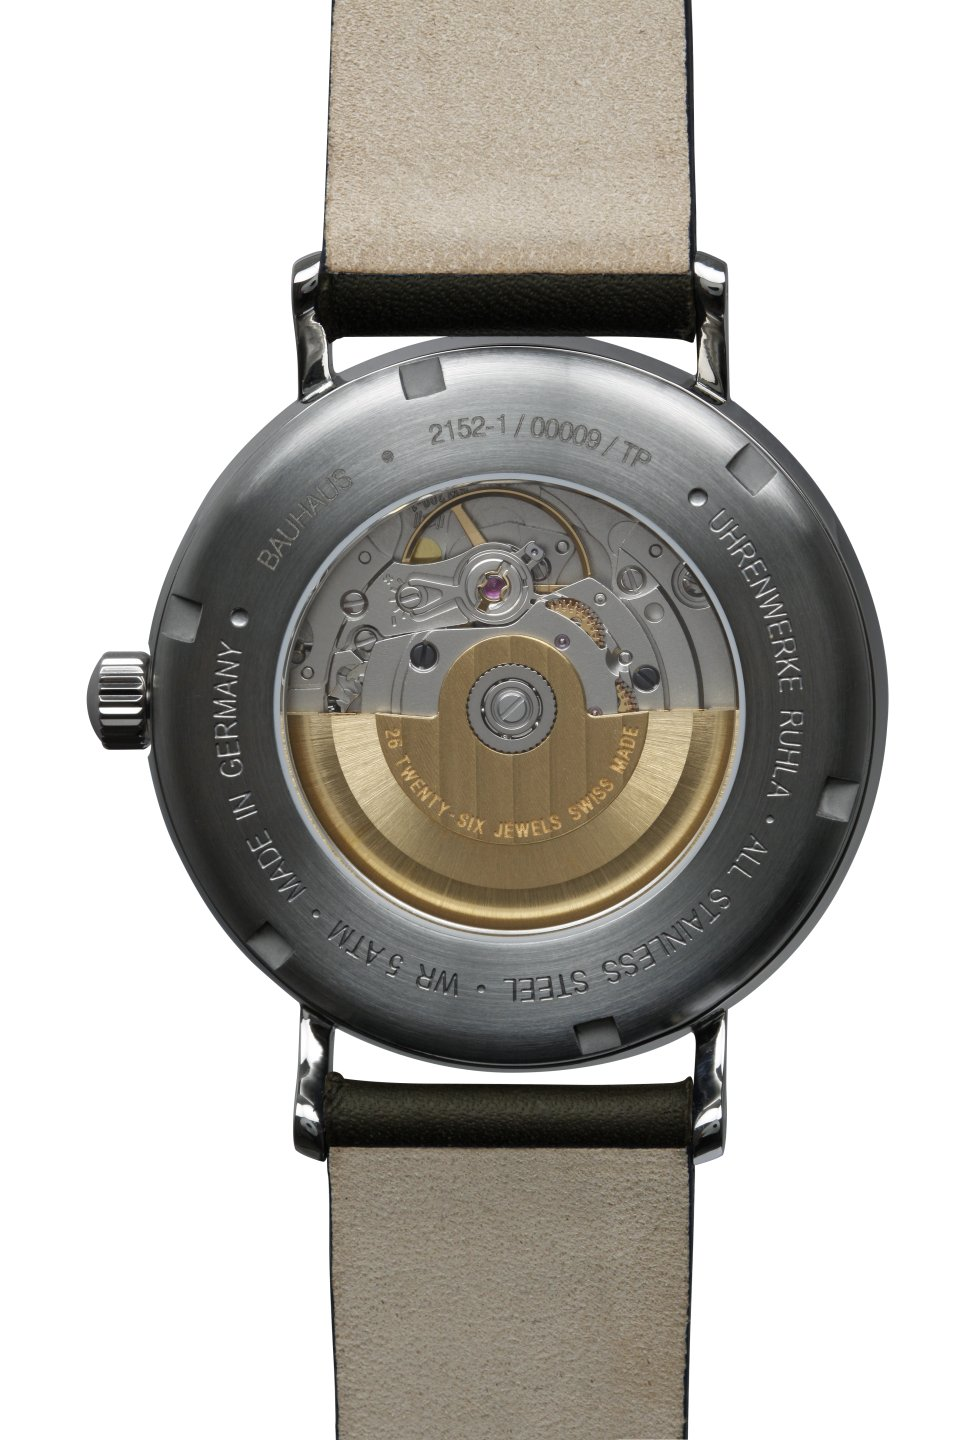 Bauhaus-Automatikuhr-2152-1 - WEISS Juwelen · Uhren · Optik